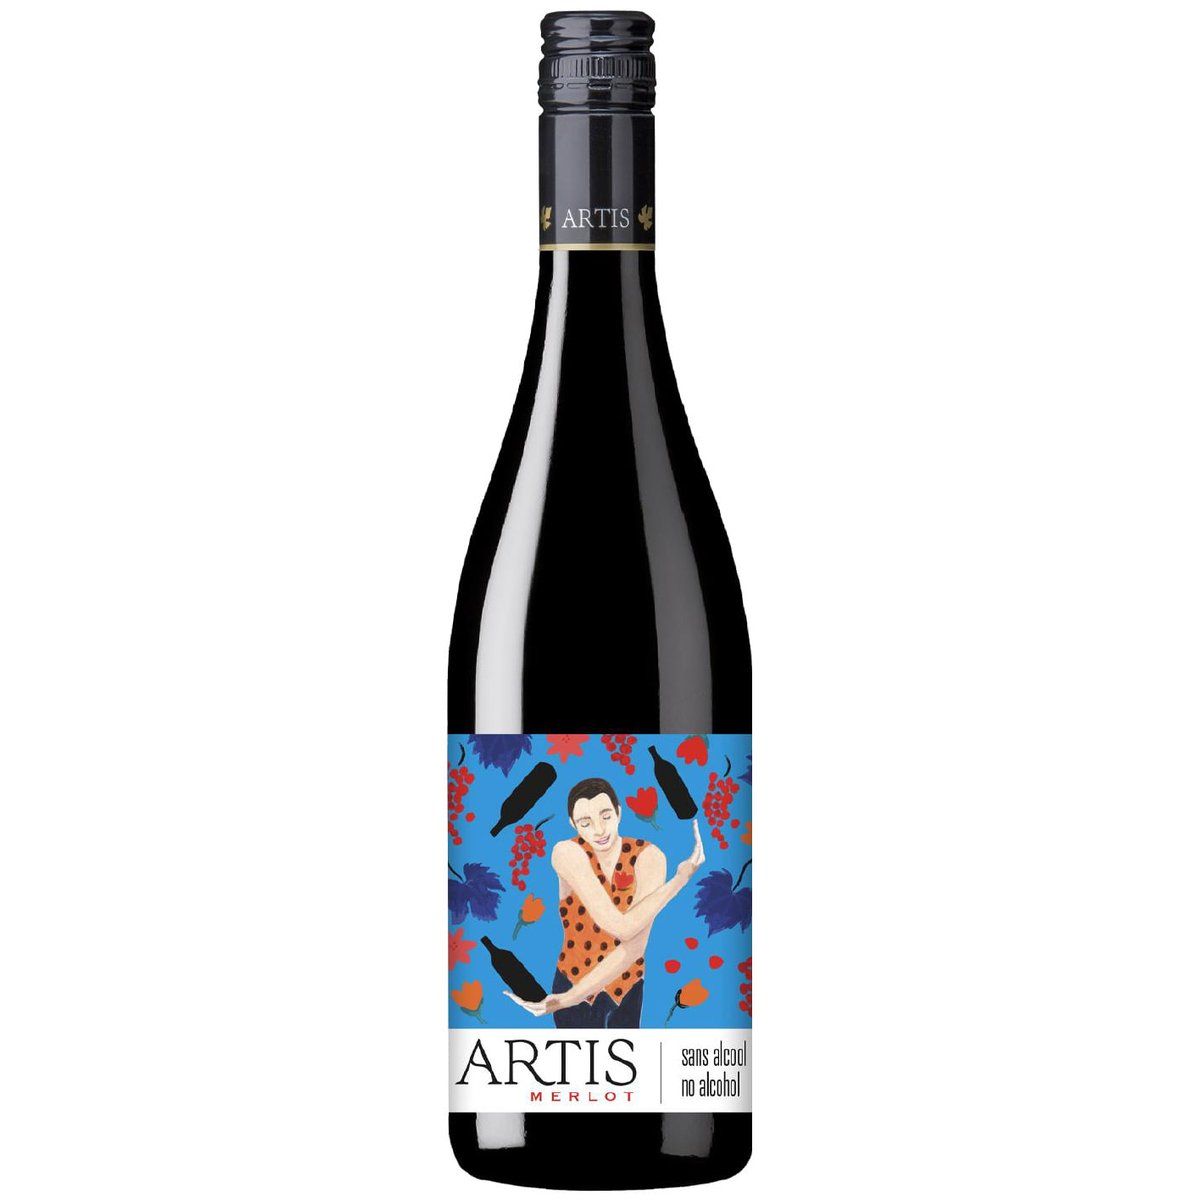 Artis Merlot odalkoholizované víno